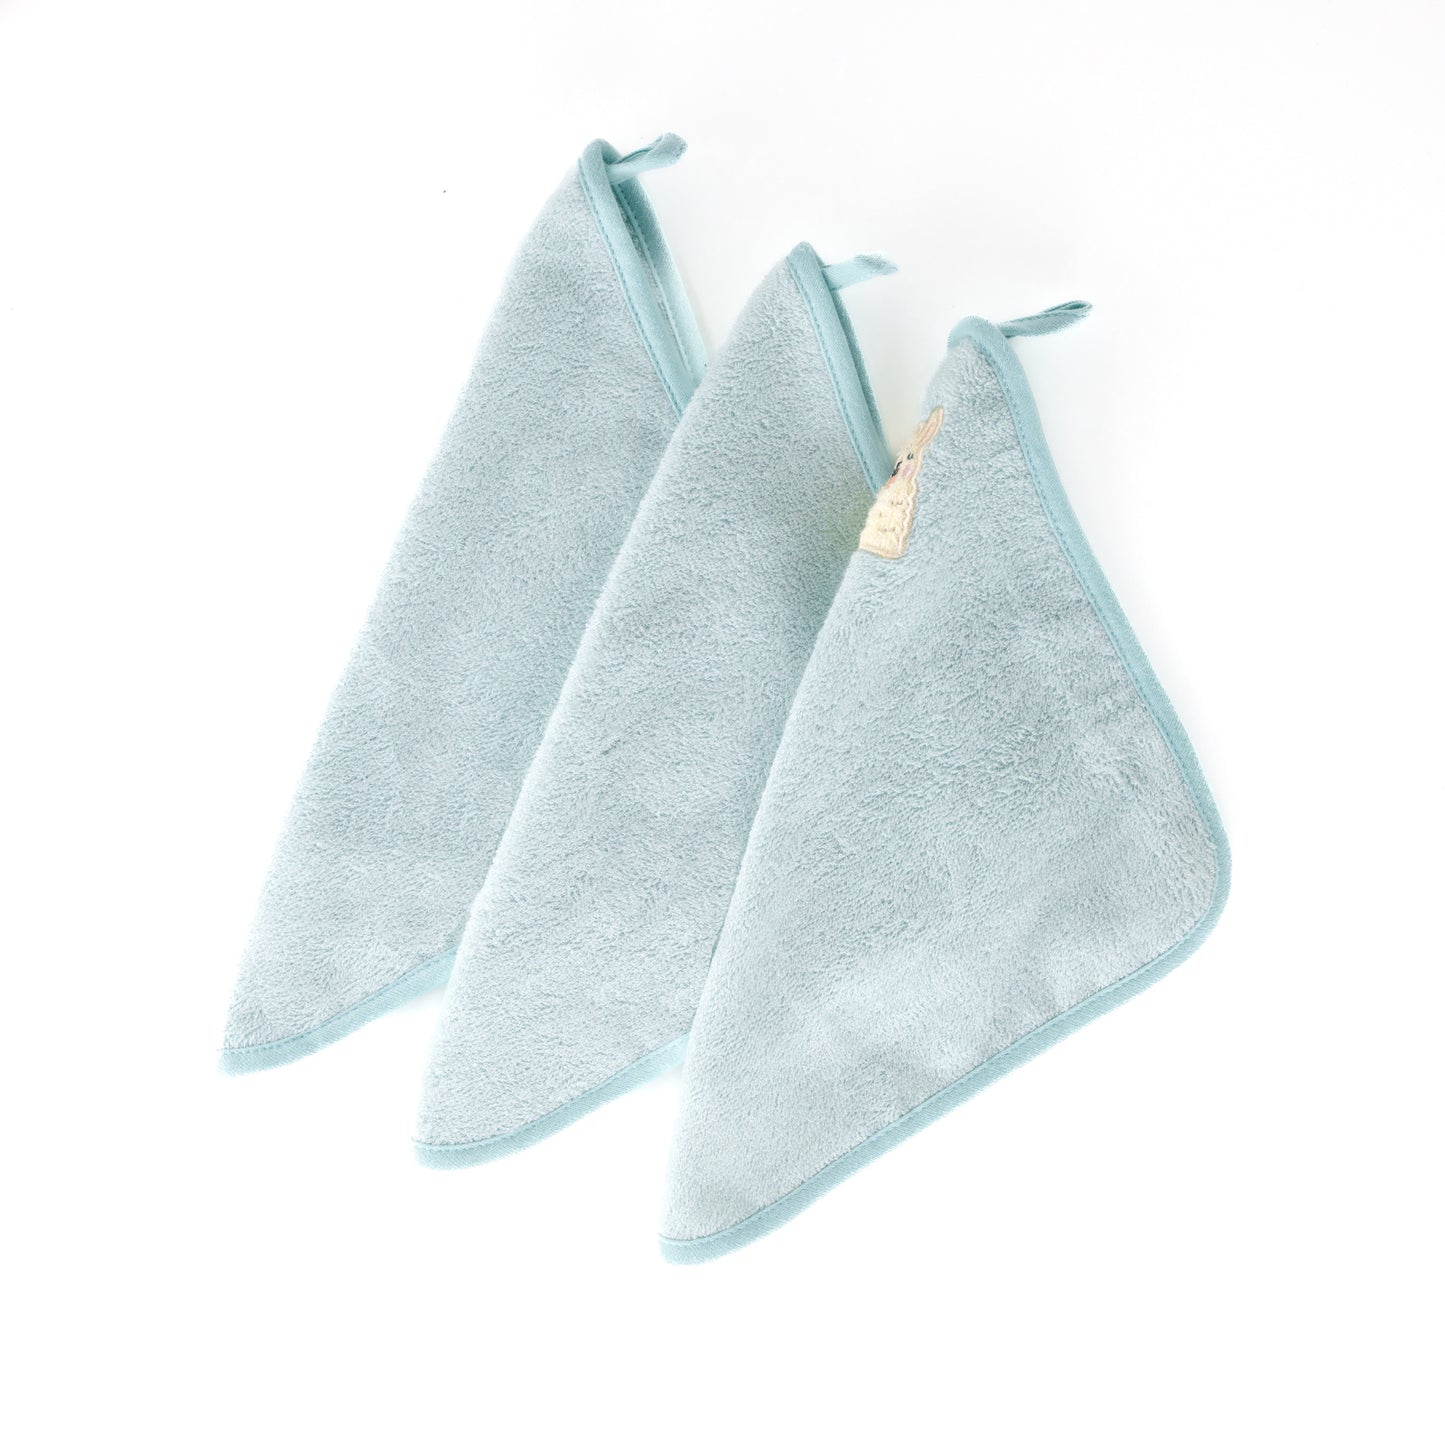 2-Sided Washcloths